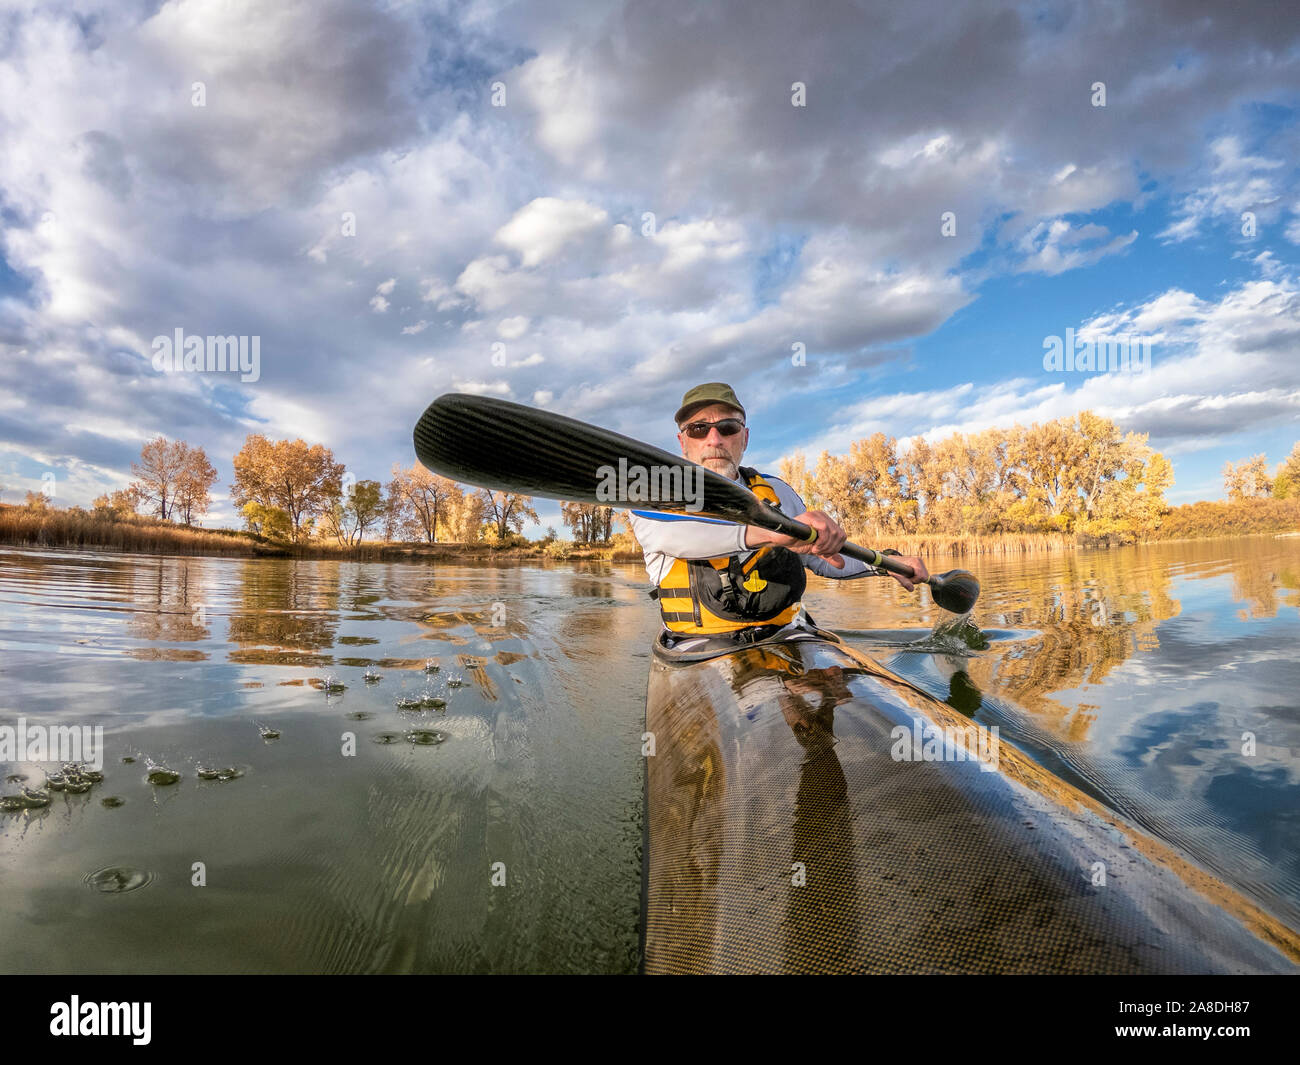 Ältere männliche Paddler ist Paddeln eine lange, schmale und schnelle racing Sea Kayak auf einem ruhigen See, Herbst Landschaft in Colorado, POV aus einer Aktion Kamera - outdoo Stockfoto